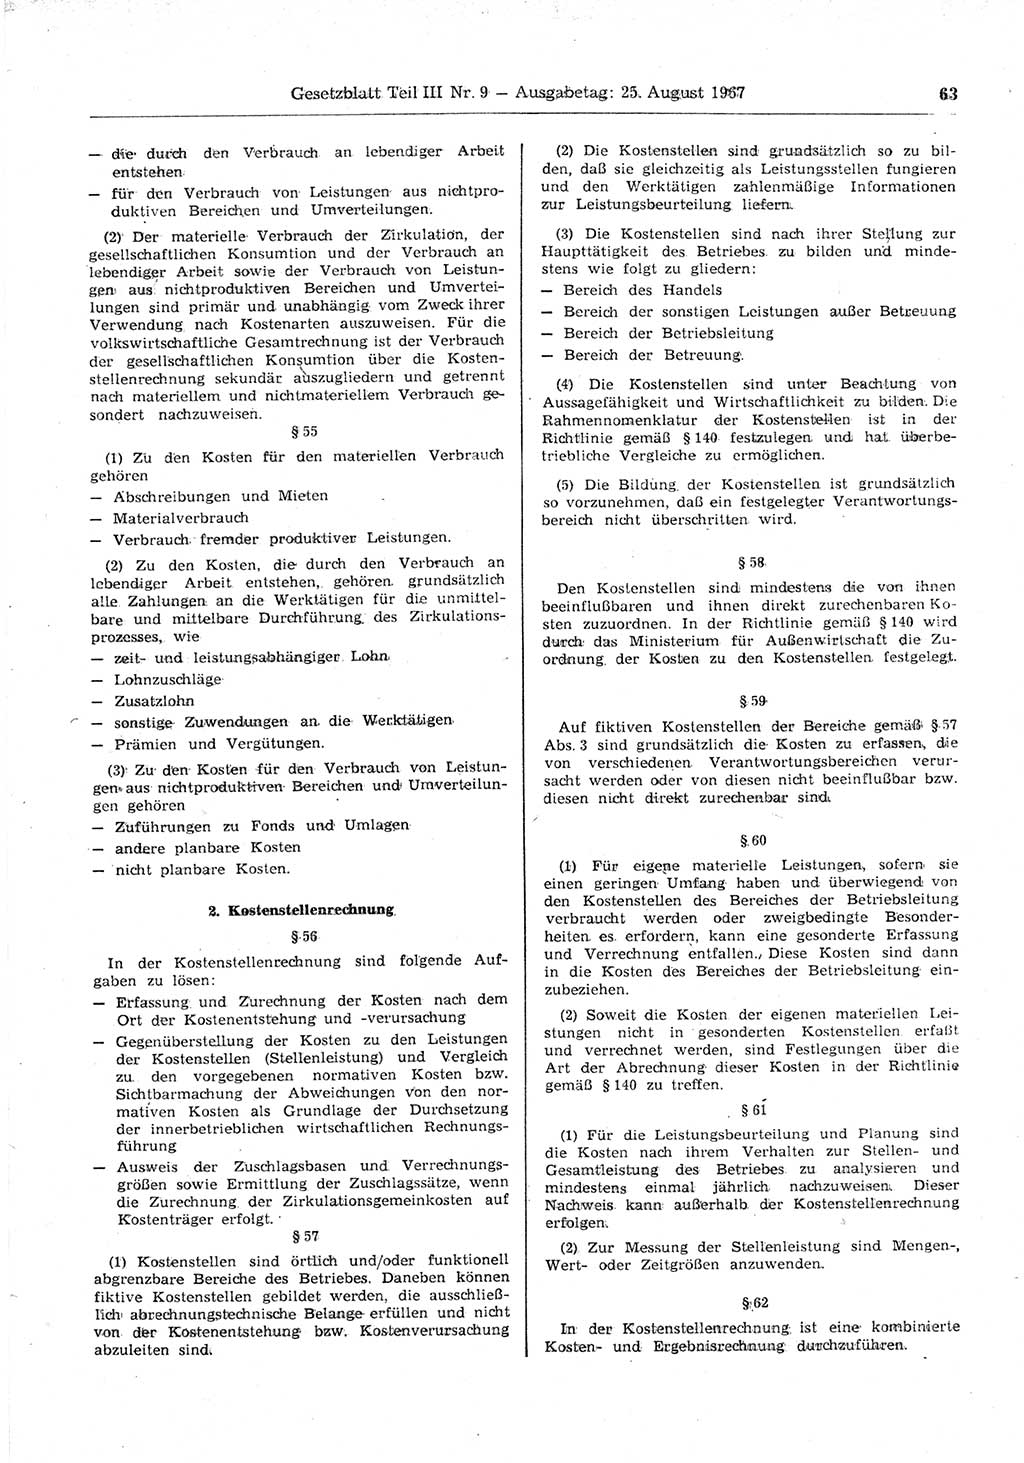 Gesetzblatt (GBl.) der Deutschen Demokratischen Republik (DDR) Teil ⅠⅠⅠ 1967, Seite 63 (GBl. DDR ⅠⅠⅠ 1967, S. 63)